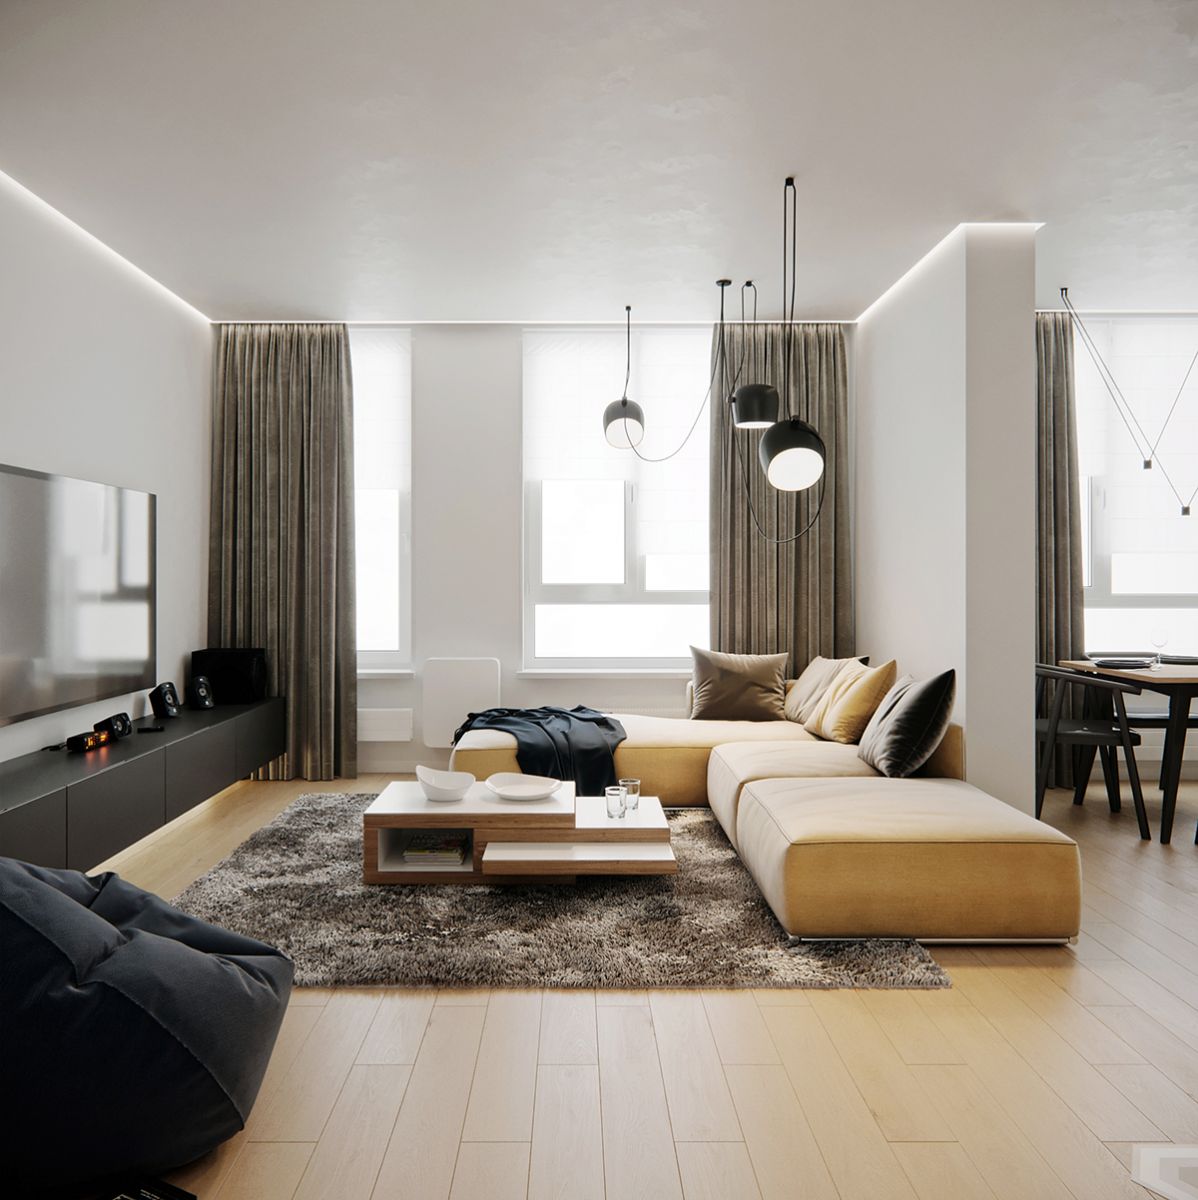 Thiết kế nội thất căn hộ chung cư EHOME 3: Bạn đang sống trong căn hộ chung cư và muốn tạo ra một không gian sống thoải mái, tiện nghi và sang trọng? Hãy xem qua những hình ảnh thiết kế nội thất của căn hộ chung cư EHOME 3 để có thêm ý tưởng mới.